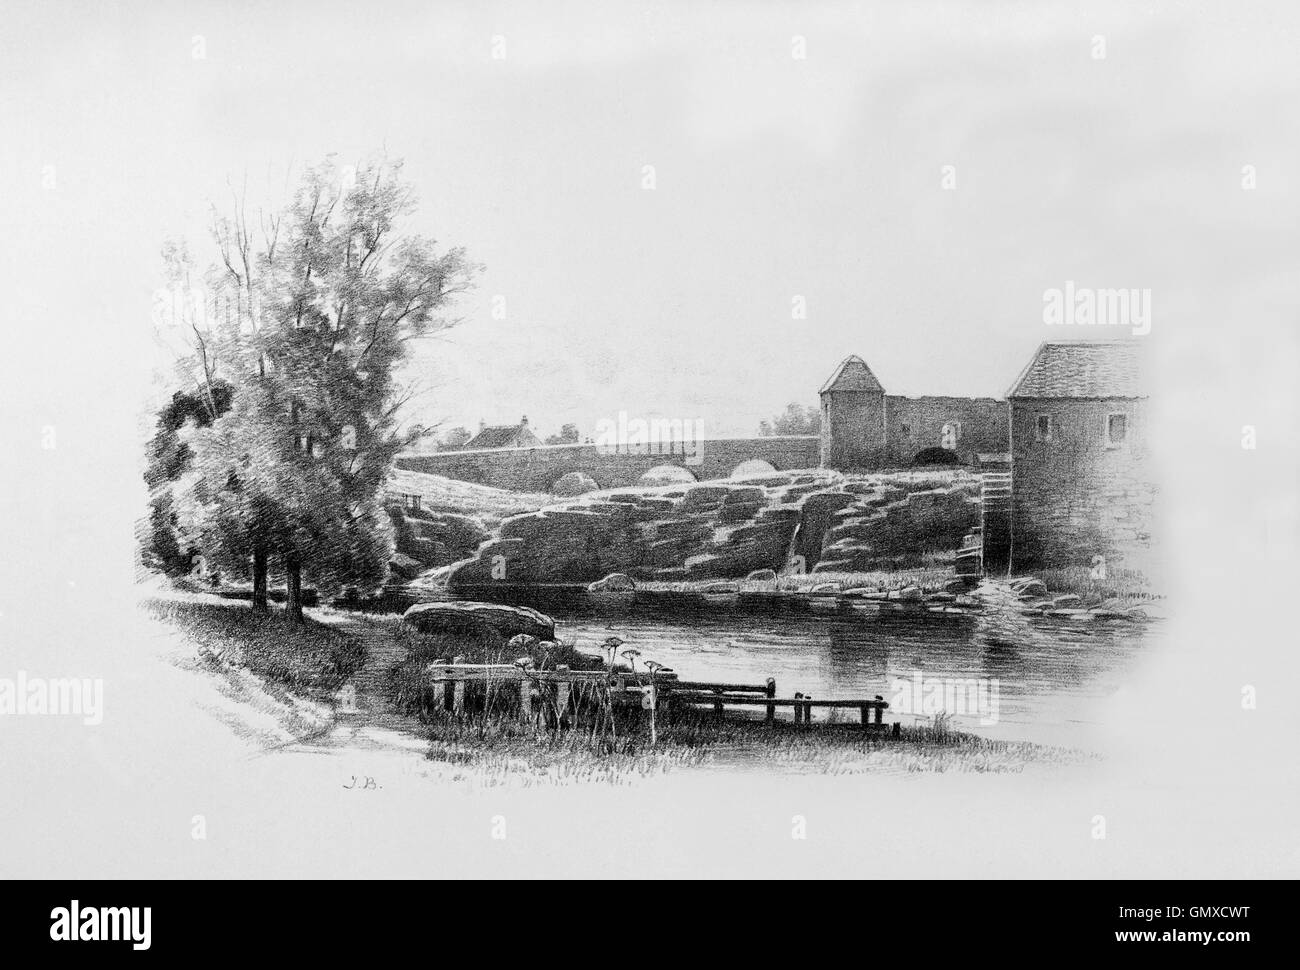 Preston-Mühle ist eine Wassermühle am Fluss Tyne am östlichen Rand von Osten Linton in East Lothian, Schottland, Vereinigtes Königreich. (Aus "Skizzen in East Lothian" von Thomas B. Blacklock... 1892) Stockfoto